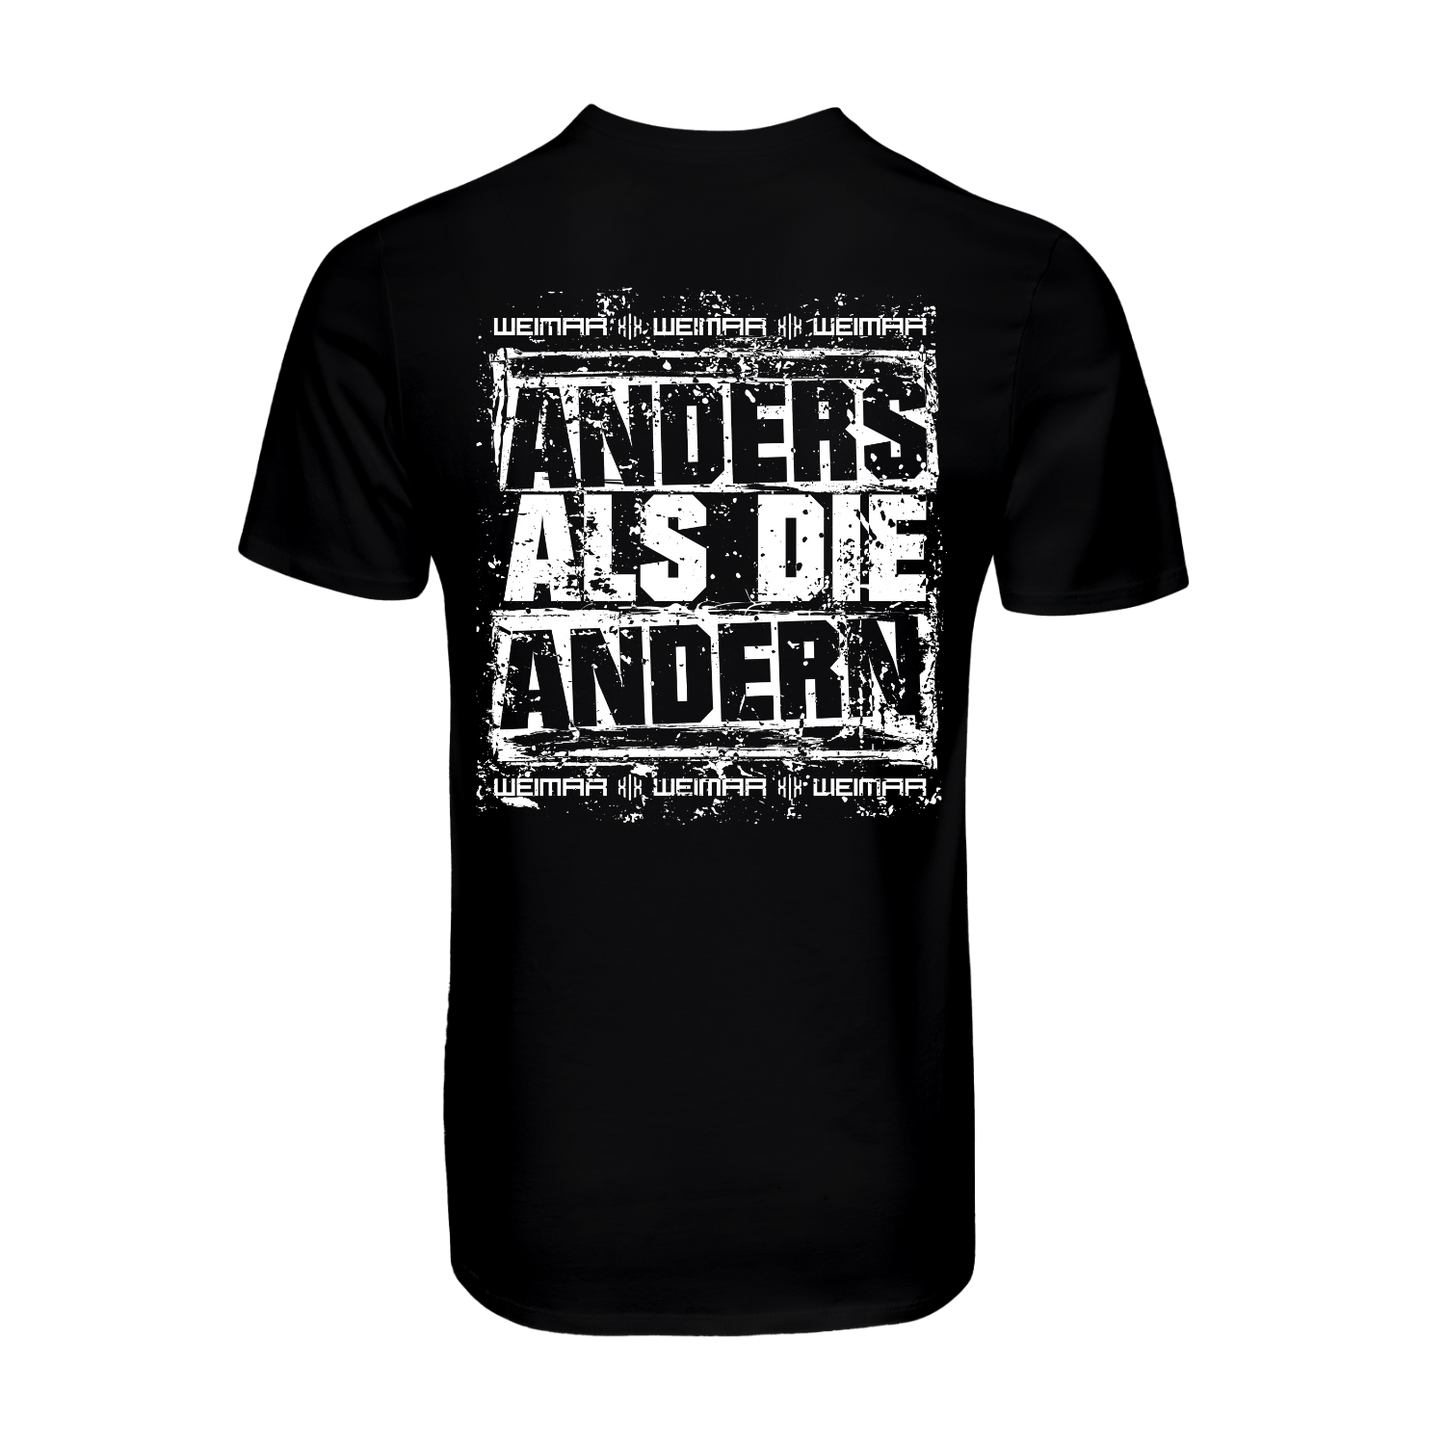 T-Shirt "Anders als die Andern" Pt. 2 Schwarz